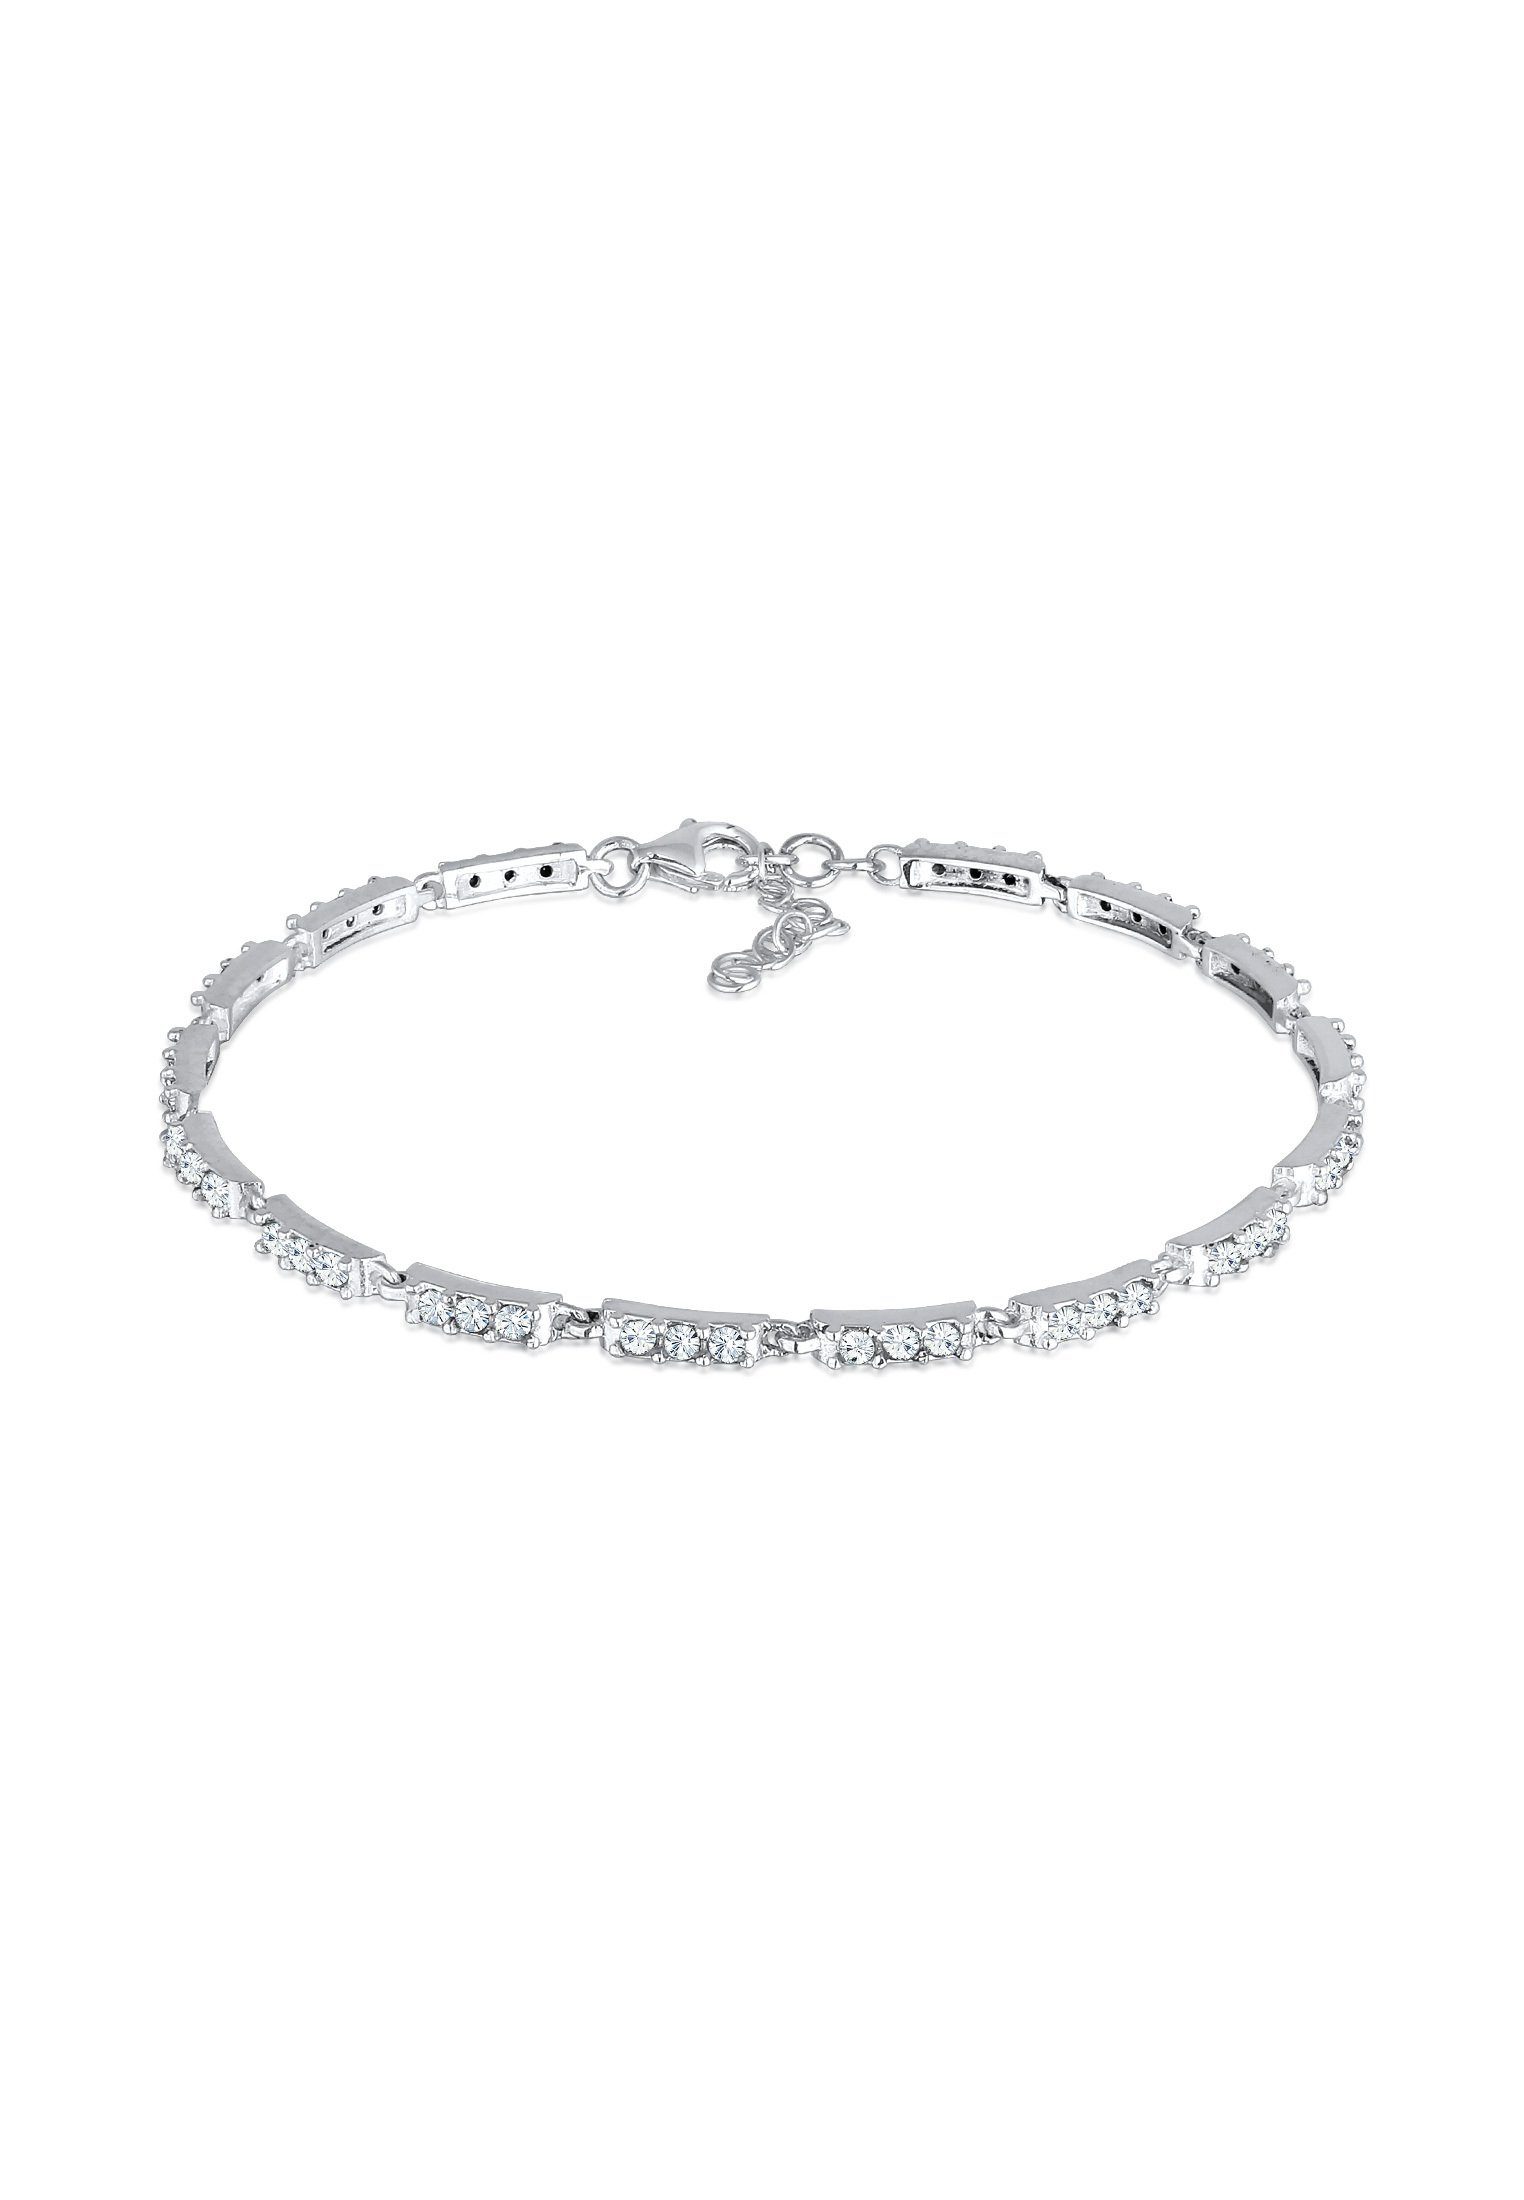 Armschmuck Tennisarmband Kristalle Silber, Elli 925 Frauen Armband Glamouröser für